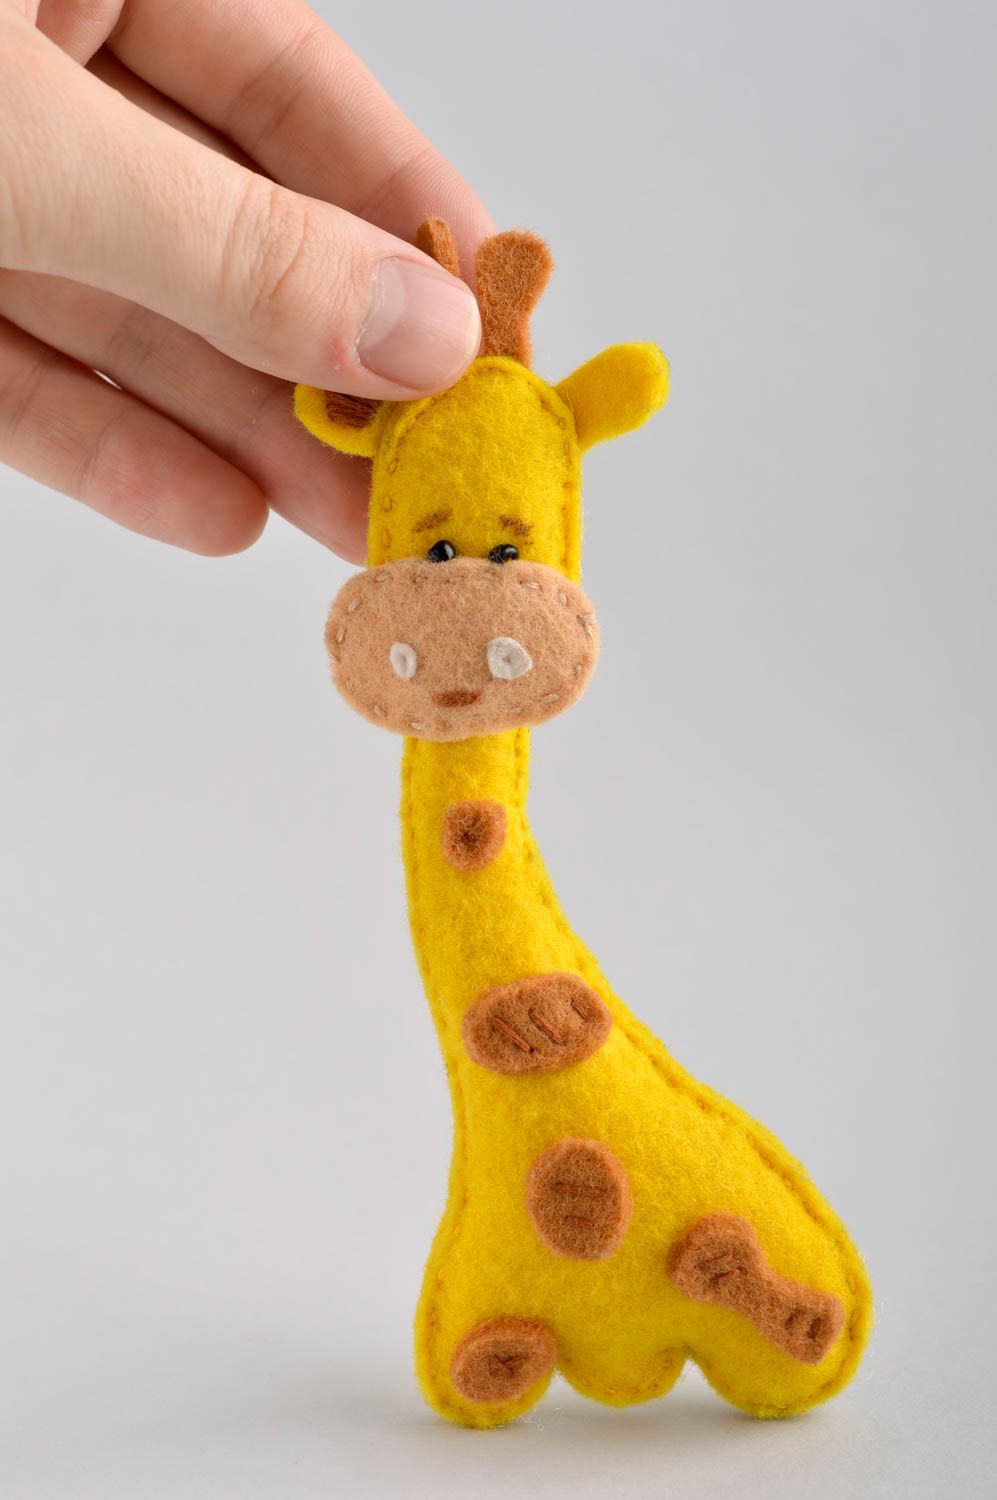 Handmade Filz Tier Giraffe Spielzeug Geschenk Idee aus Filzwolle gelb knuddelig foto 5